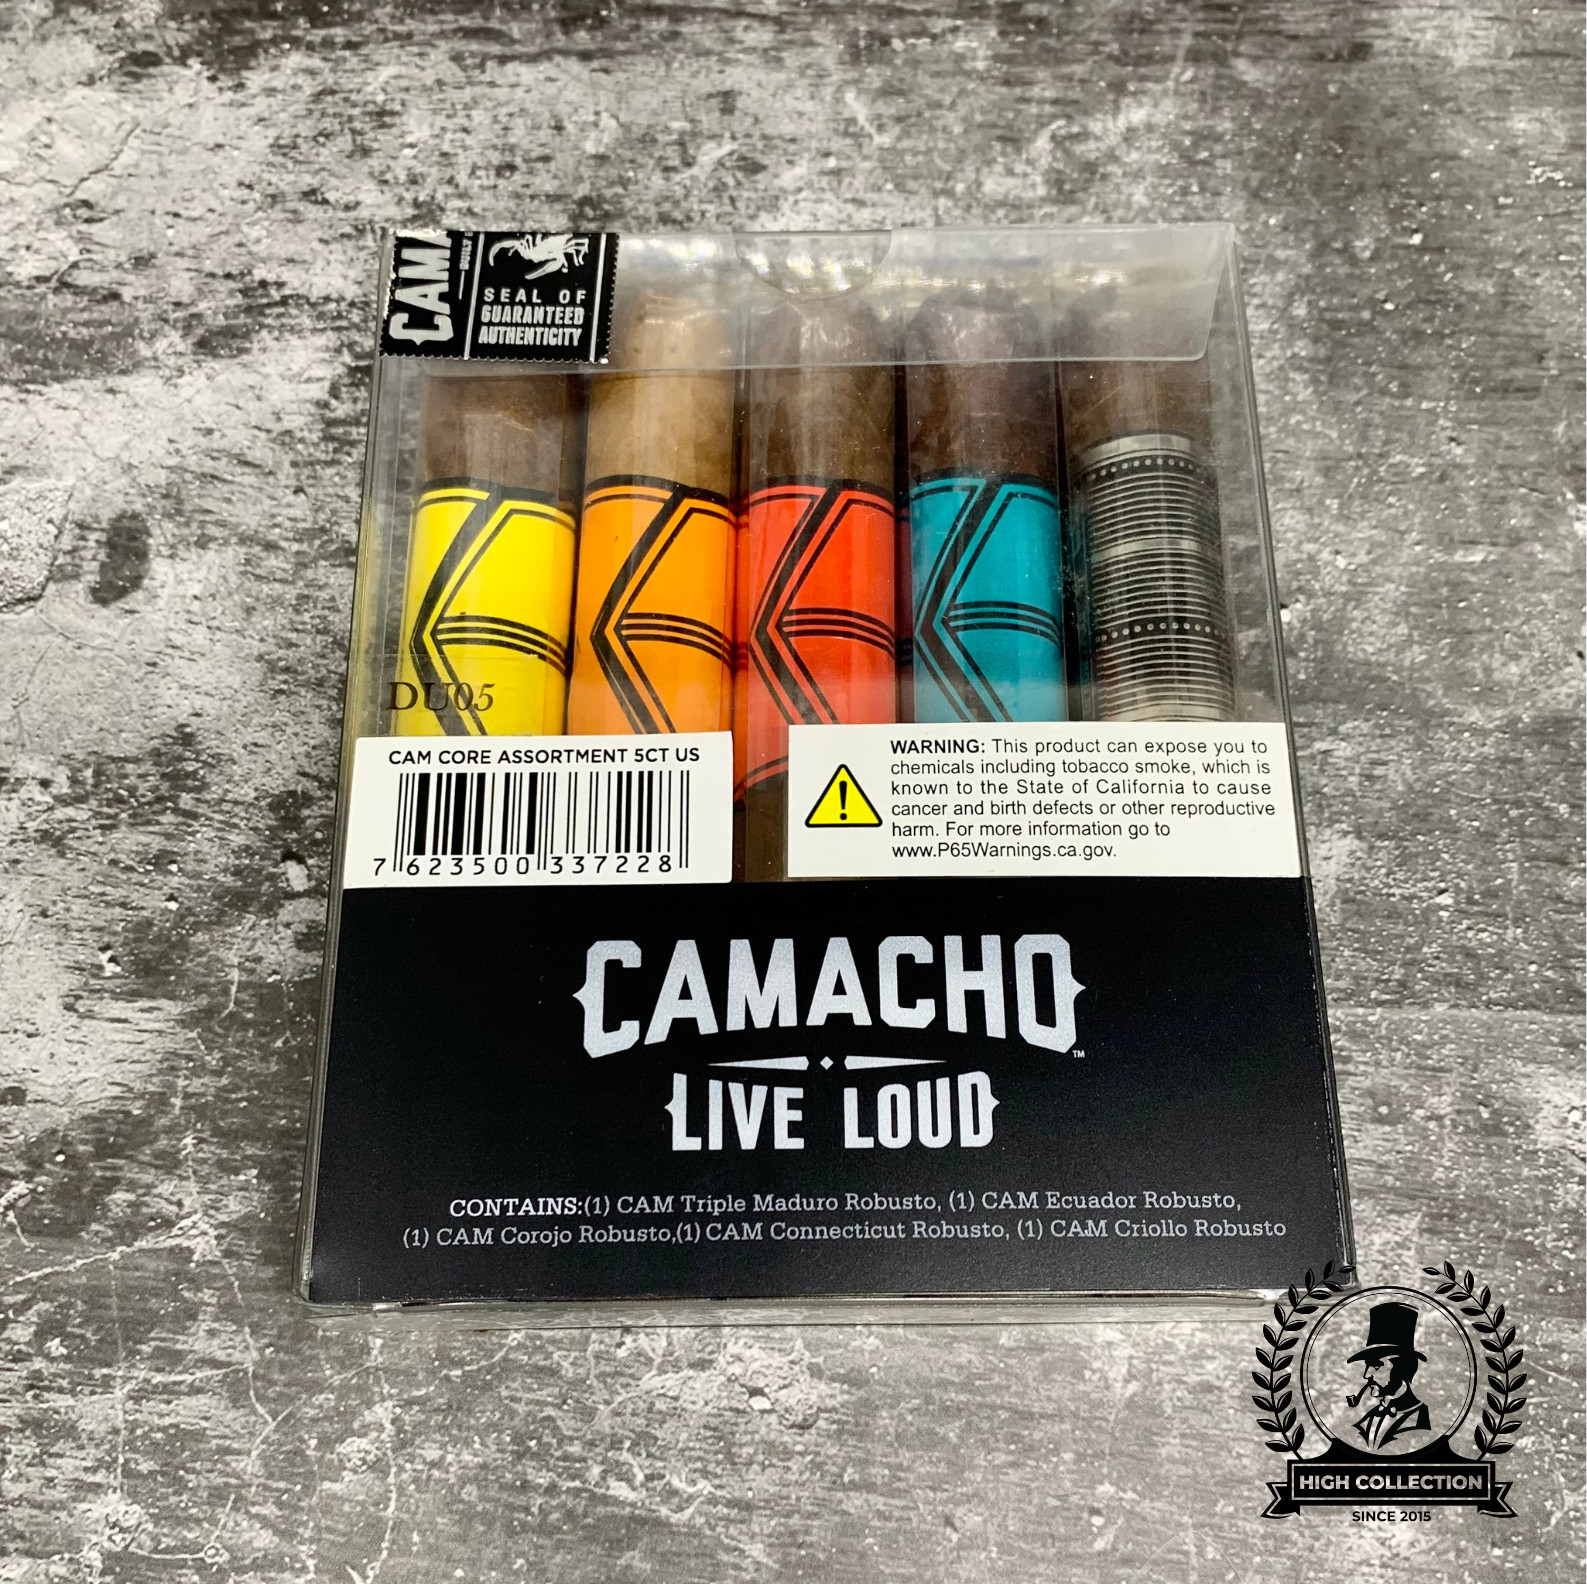 Cigar Camacho Core 5ive Assortment